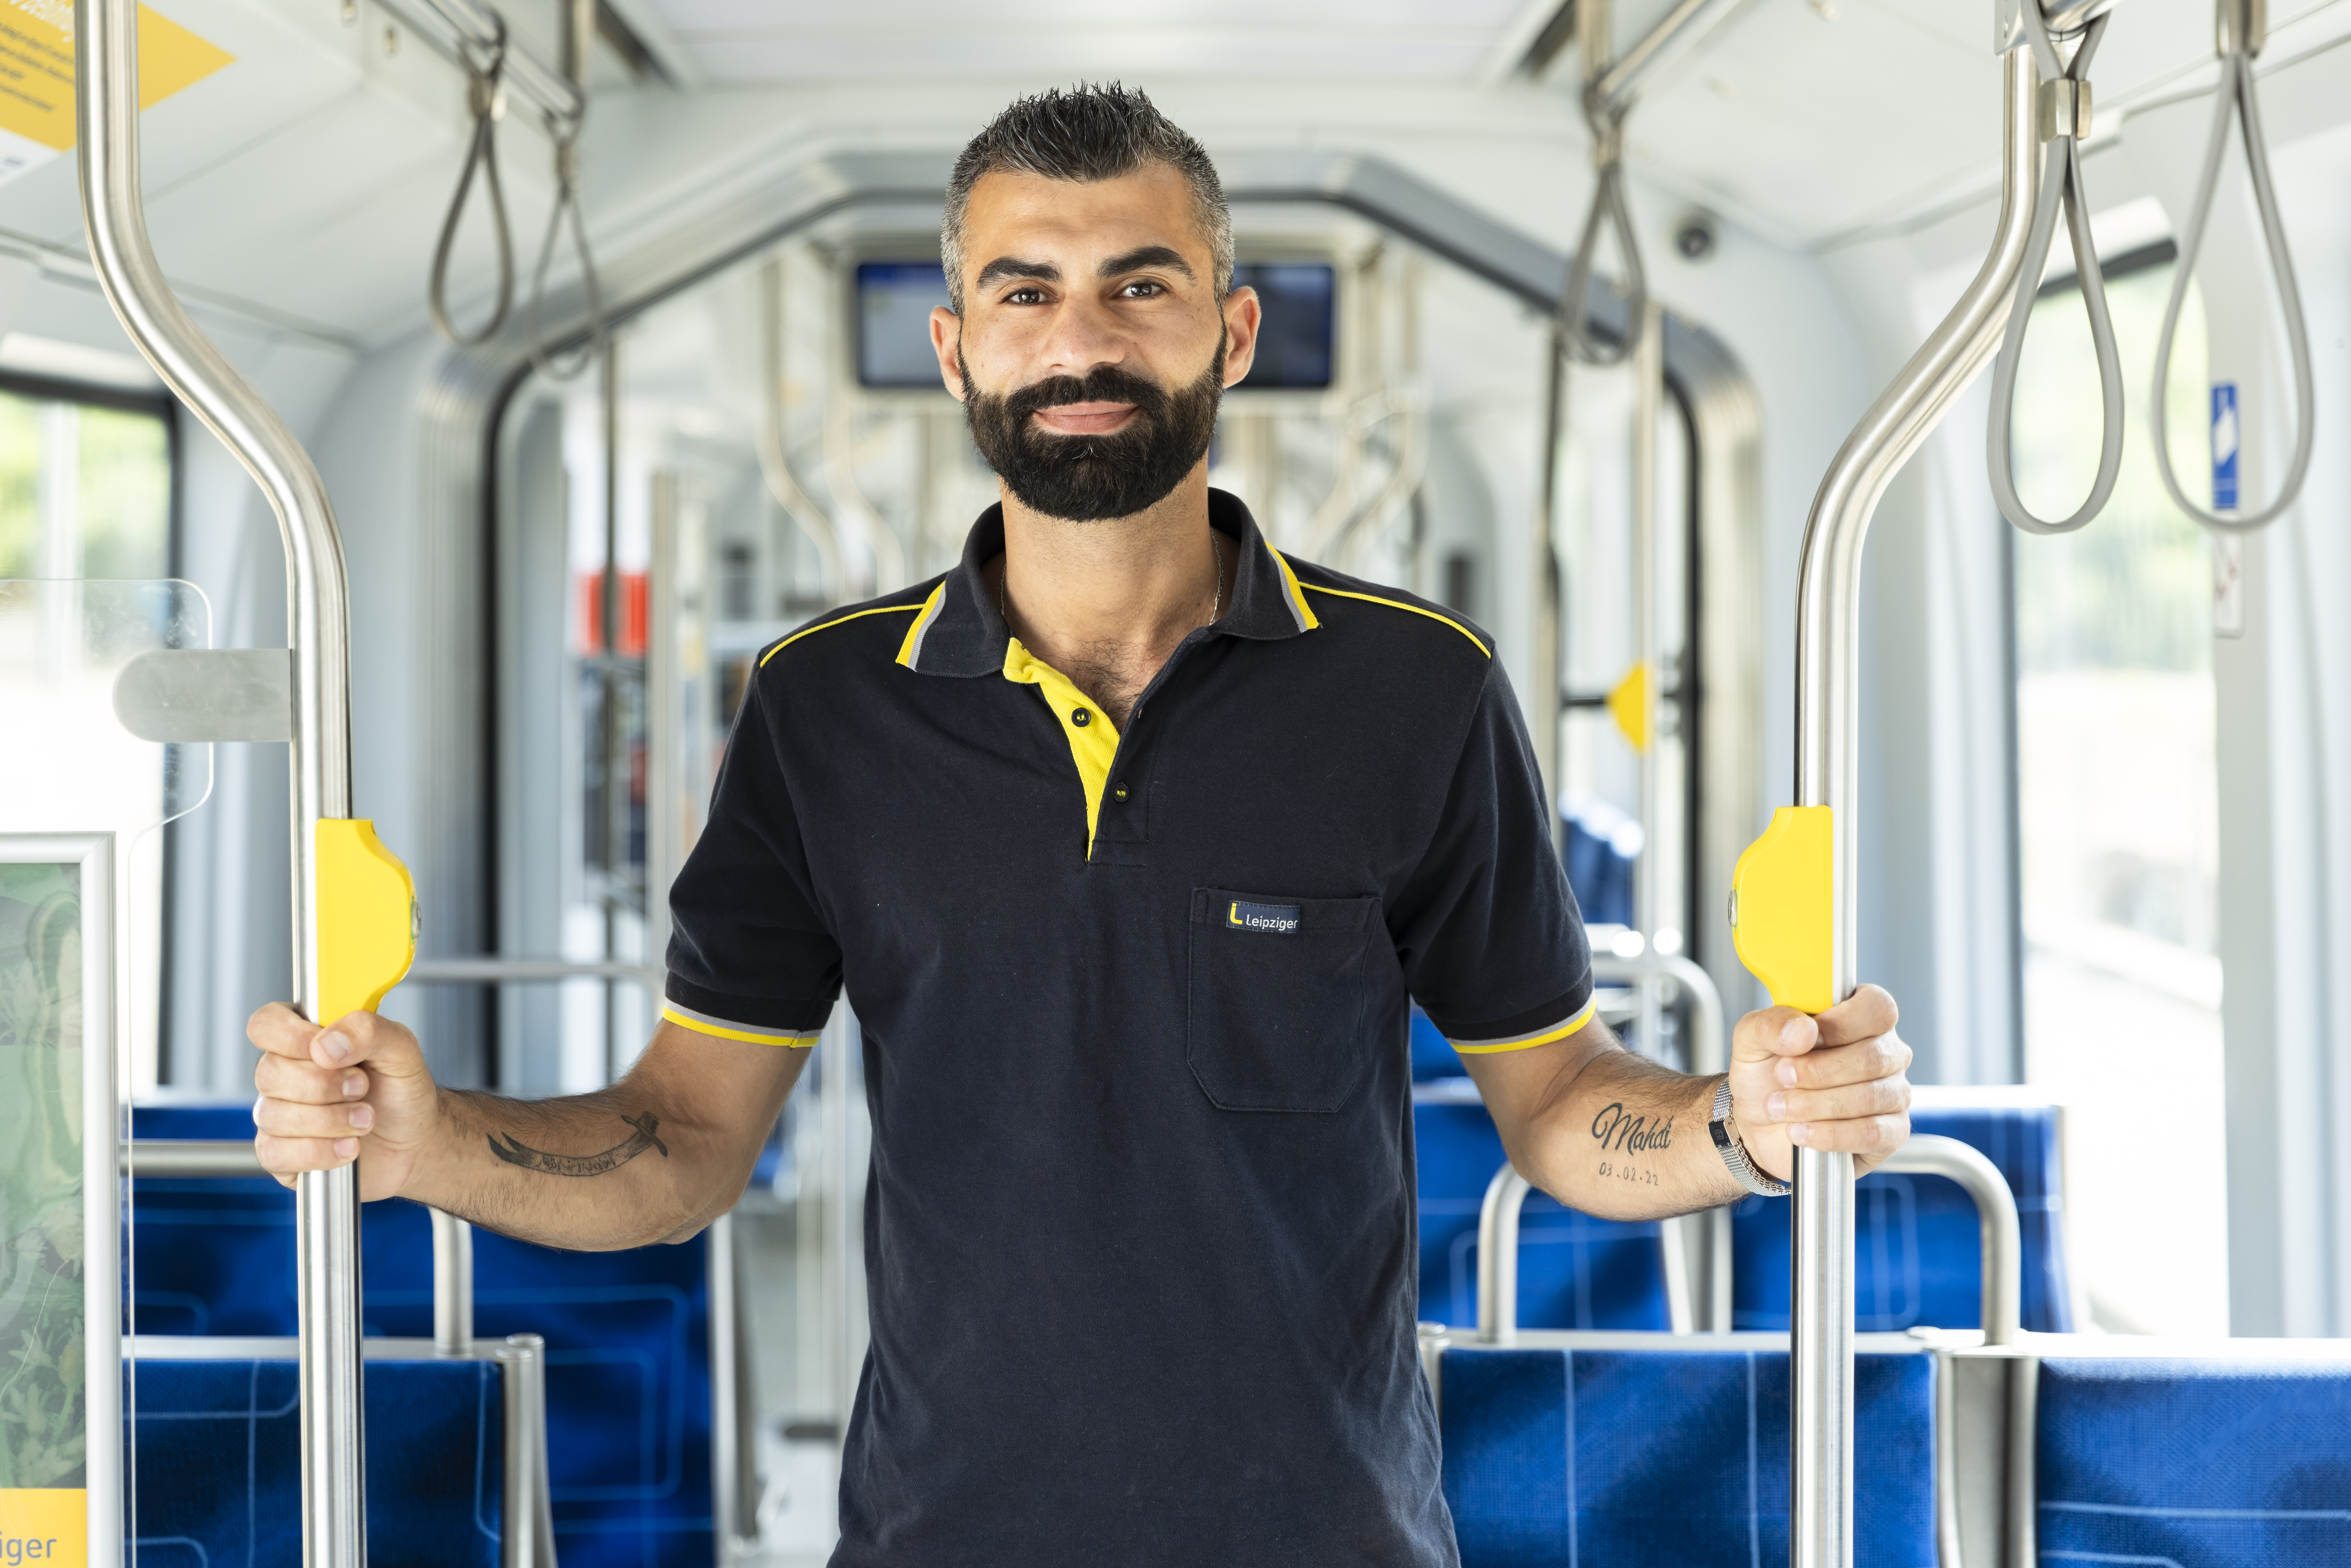 Nazar Arab steht in einer leeren Straßenbahn. Er hält sich mit beiden Händen an den Metallstäben fest und lächelt in die Kamera.